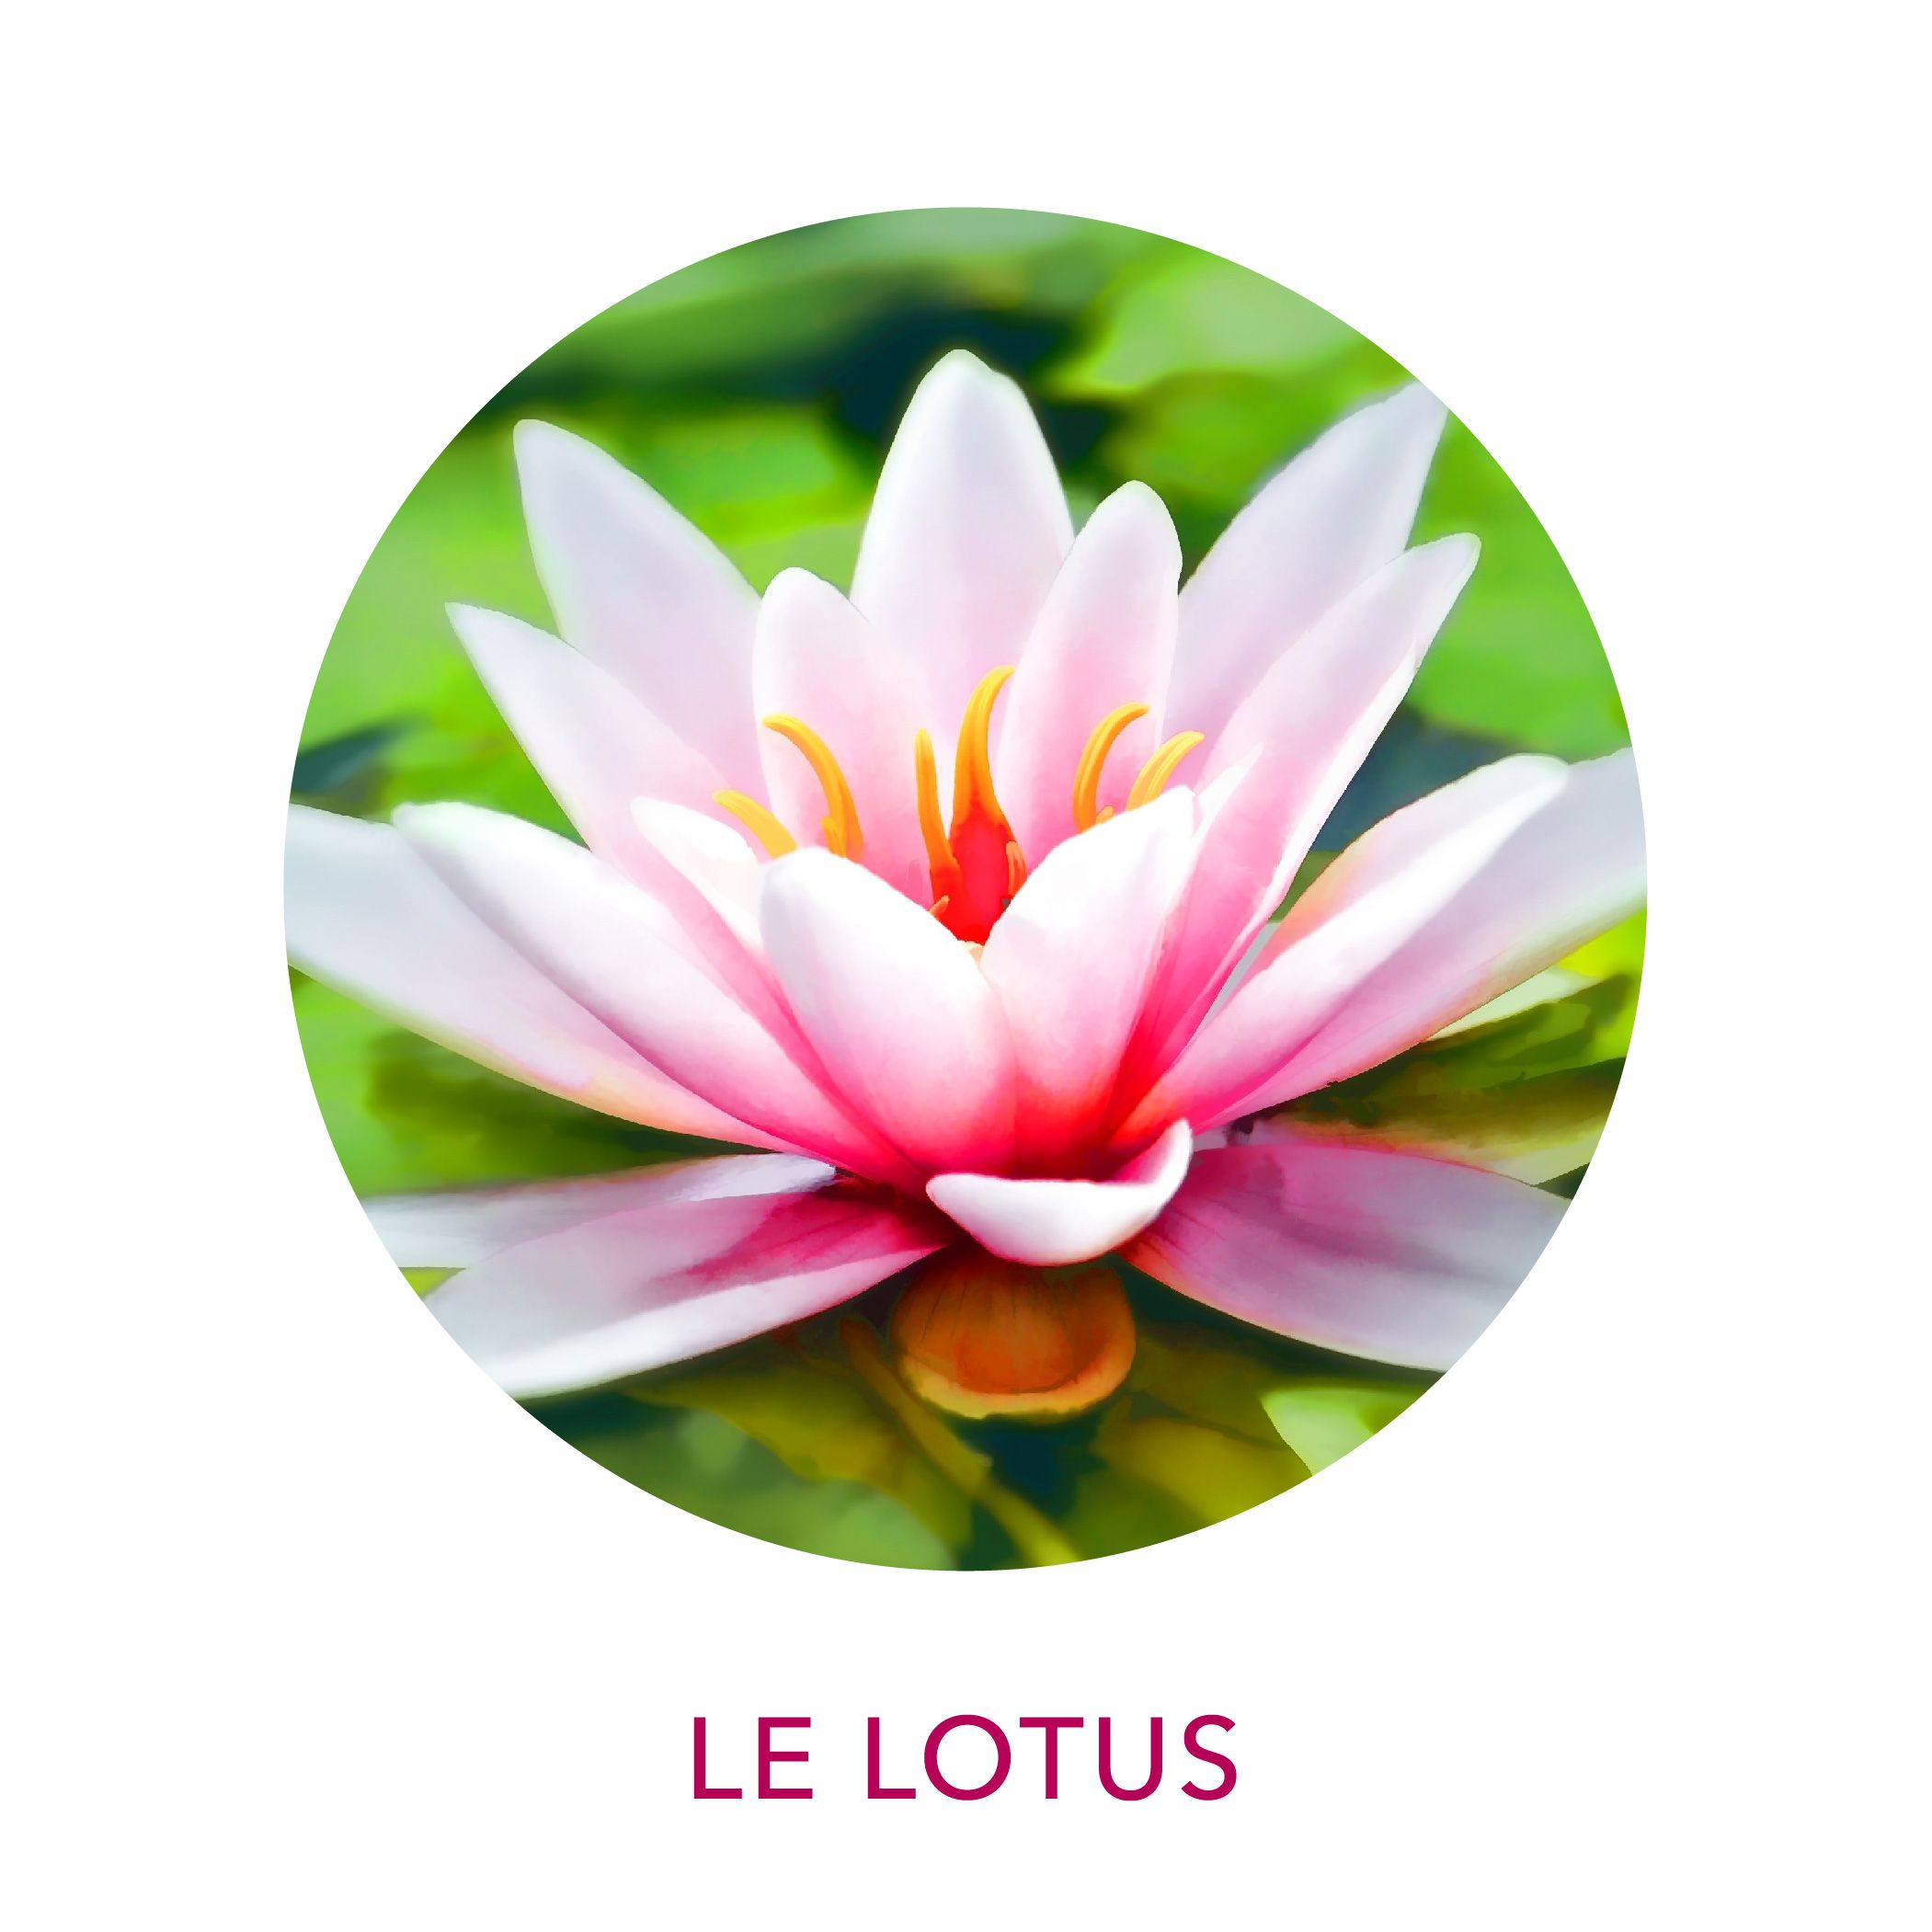 Extrait de lotus sacré